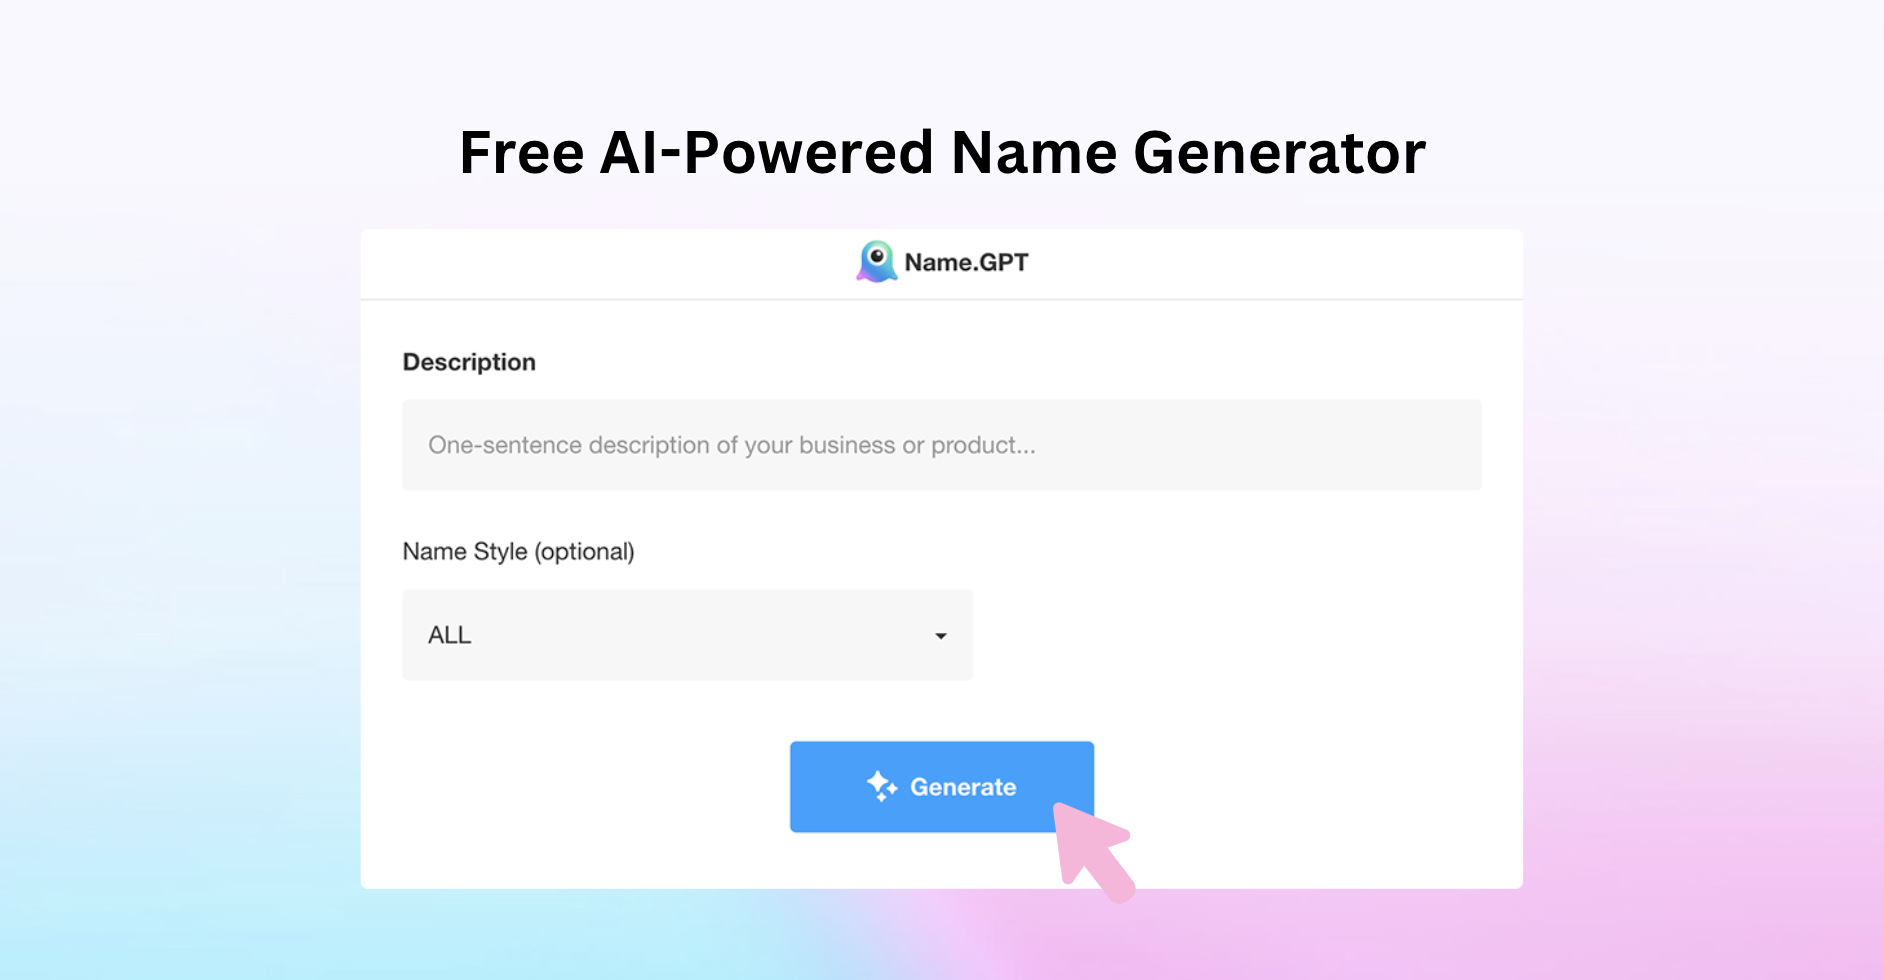 Create a Superhero Name Generator with TensorFlow